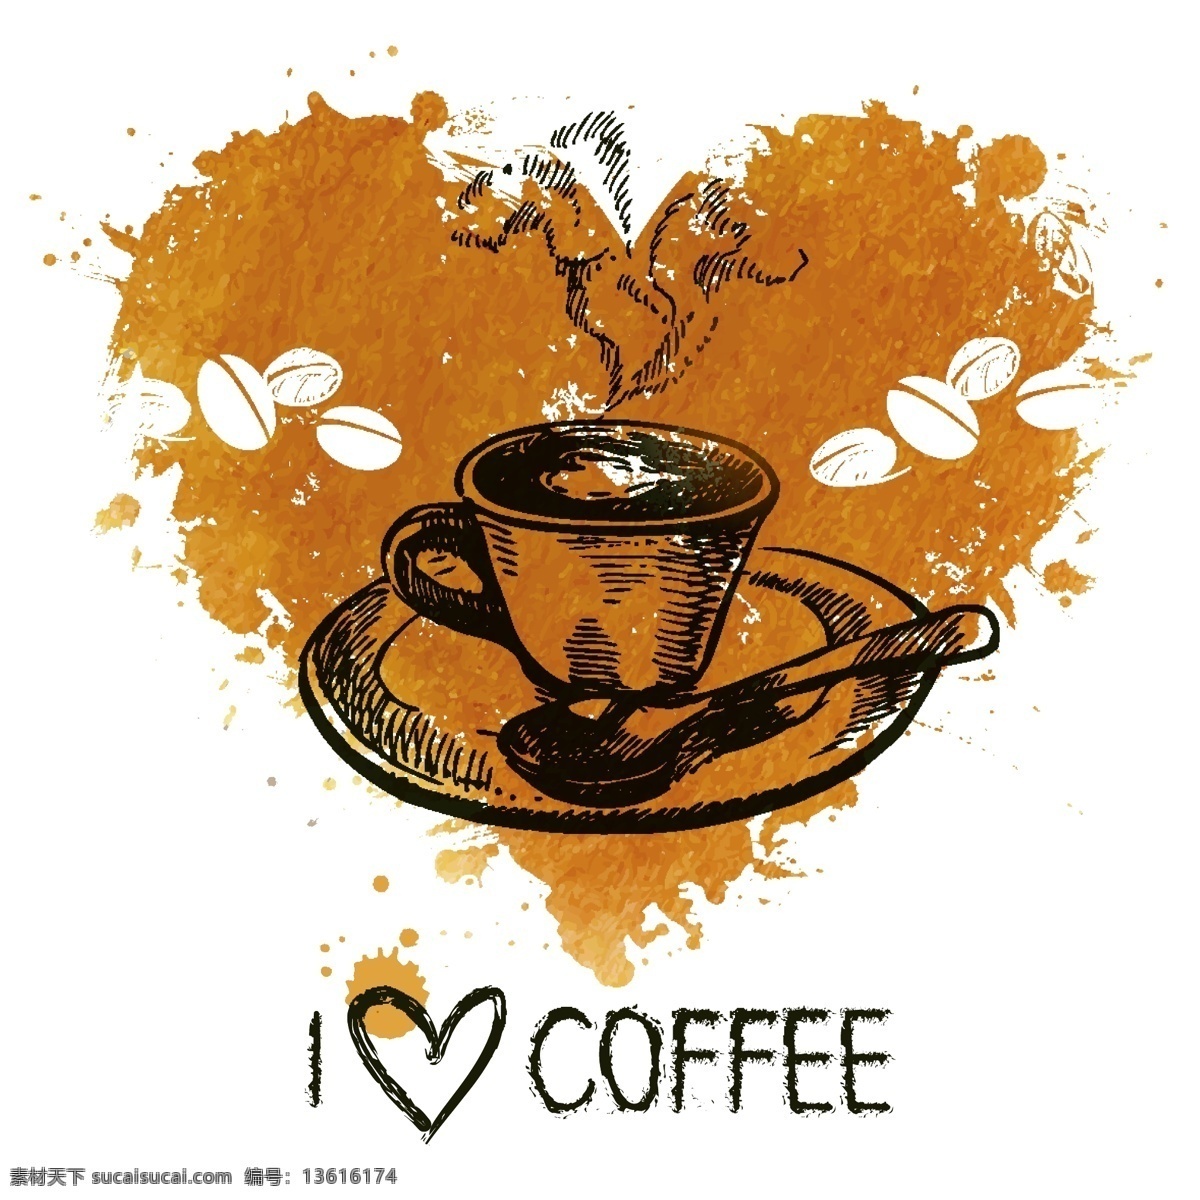 咖啡 图标 咖啡店 标志 咖啡设计 咖啡图标 咖啡标志 咖啡豆 咖啡元素 咖啡店图标 logo coffee 咖啡商标 vi icon 小图标 图标设计 logo设计 标志设计 标识设计 矢量设计 餐饮美食 生活百科 矢量